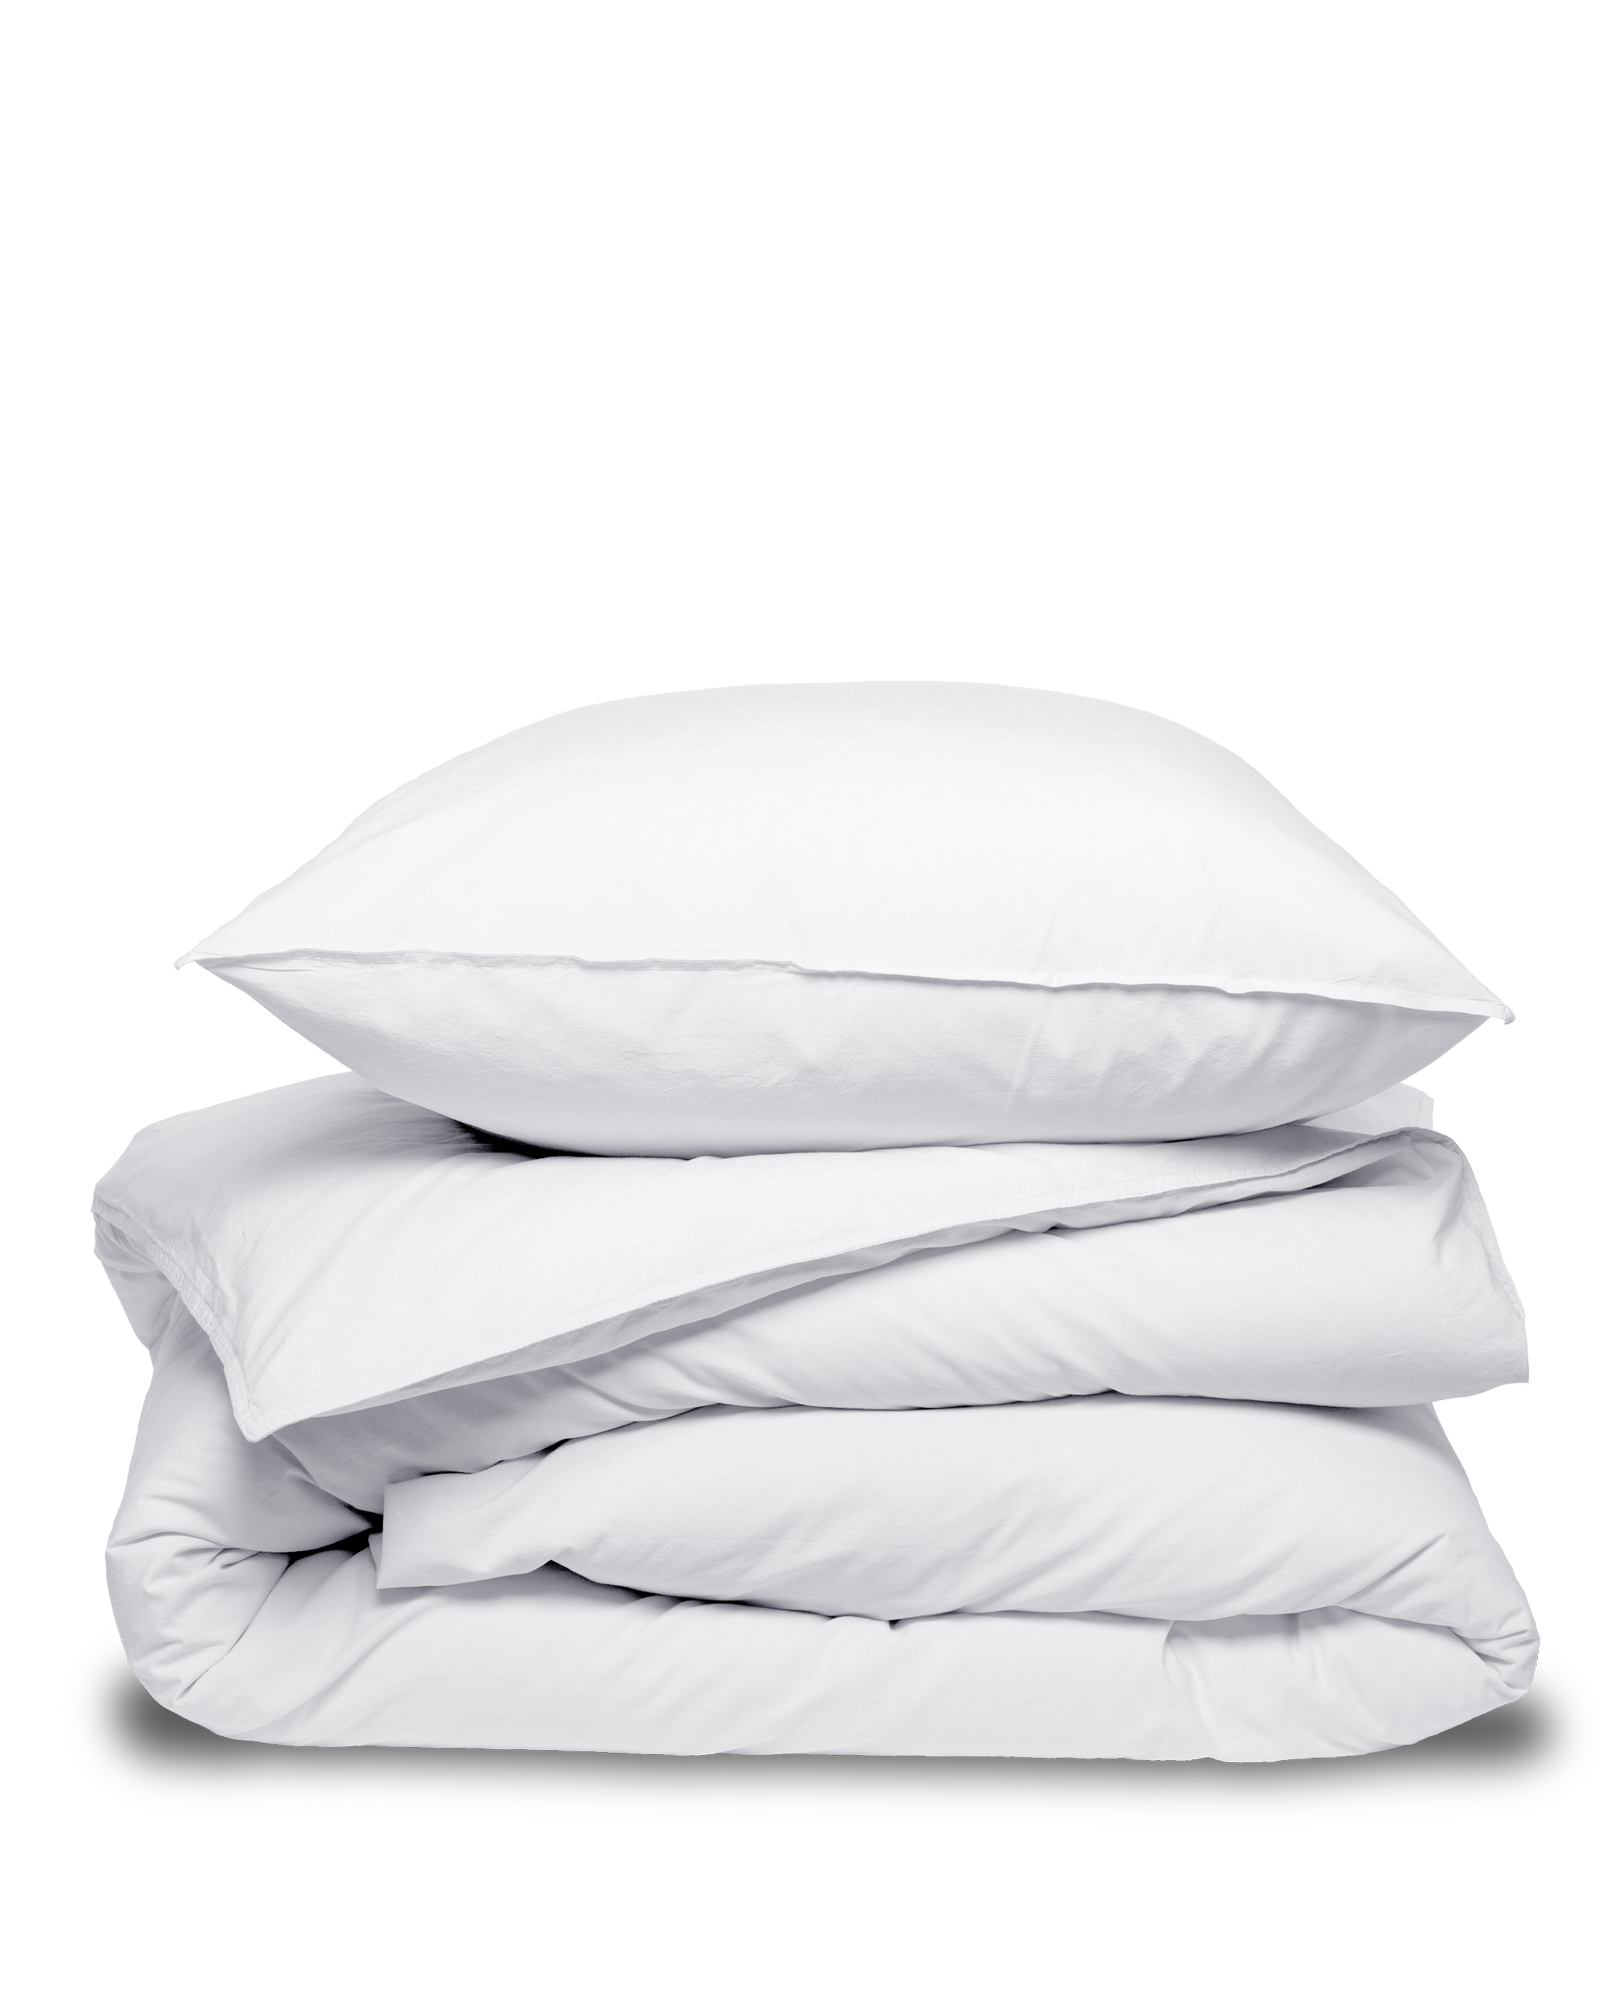 MARIE-MARIE - Pillowcase VINTAGE COTTON White Snow - 50x75 cm - White Snow